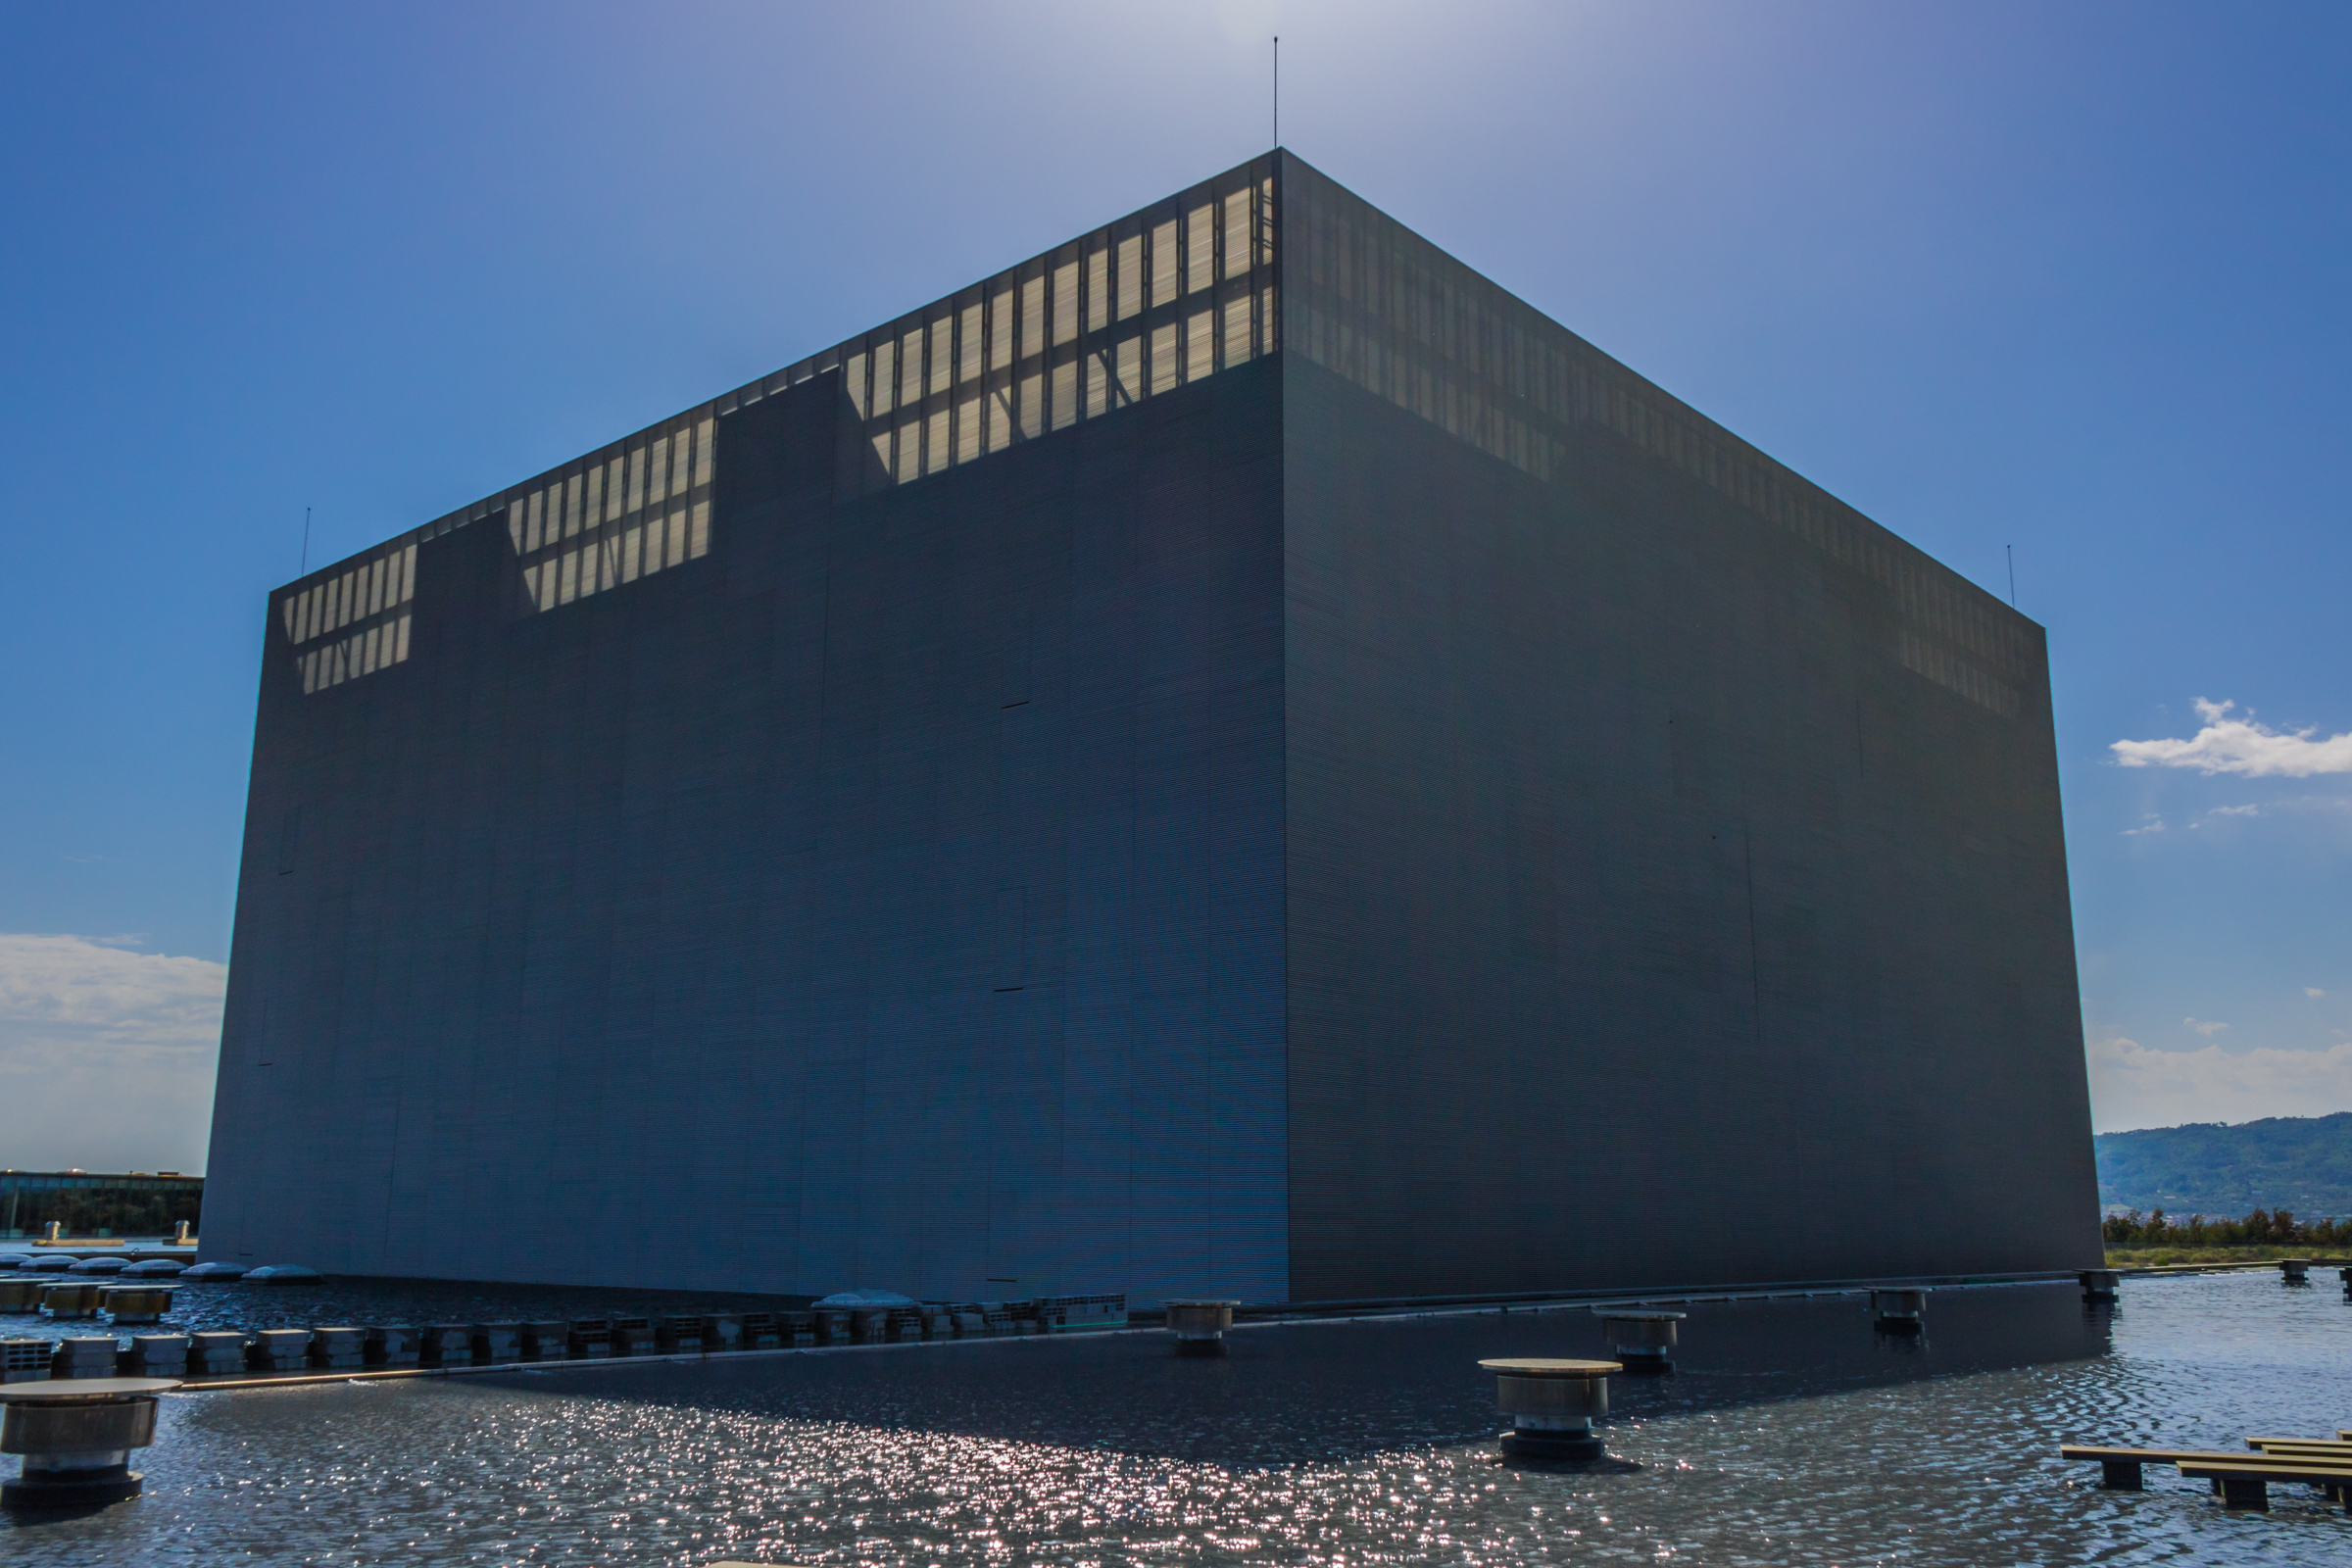 Un Data Center à Covilha (Portugal). Ces immenses infrastructures sont au coeur de l'économie numérique. ©Tiago Silva